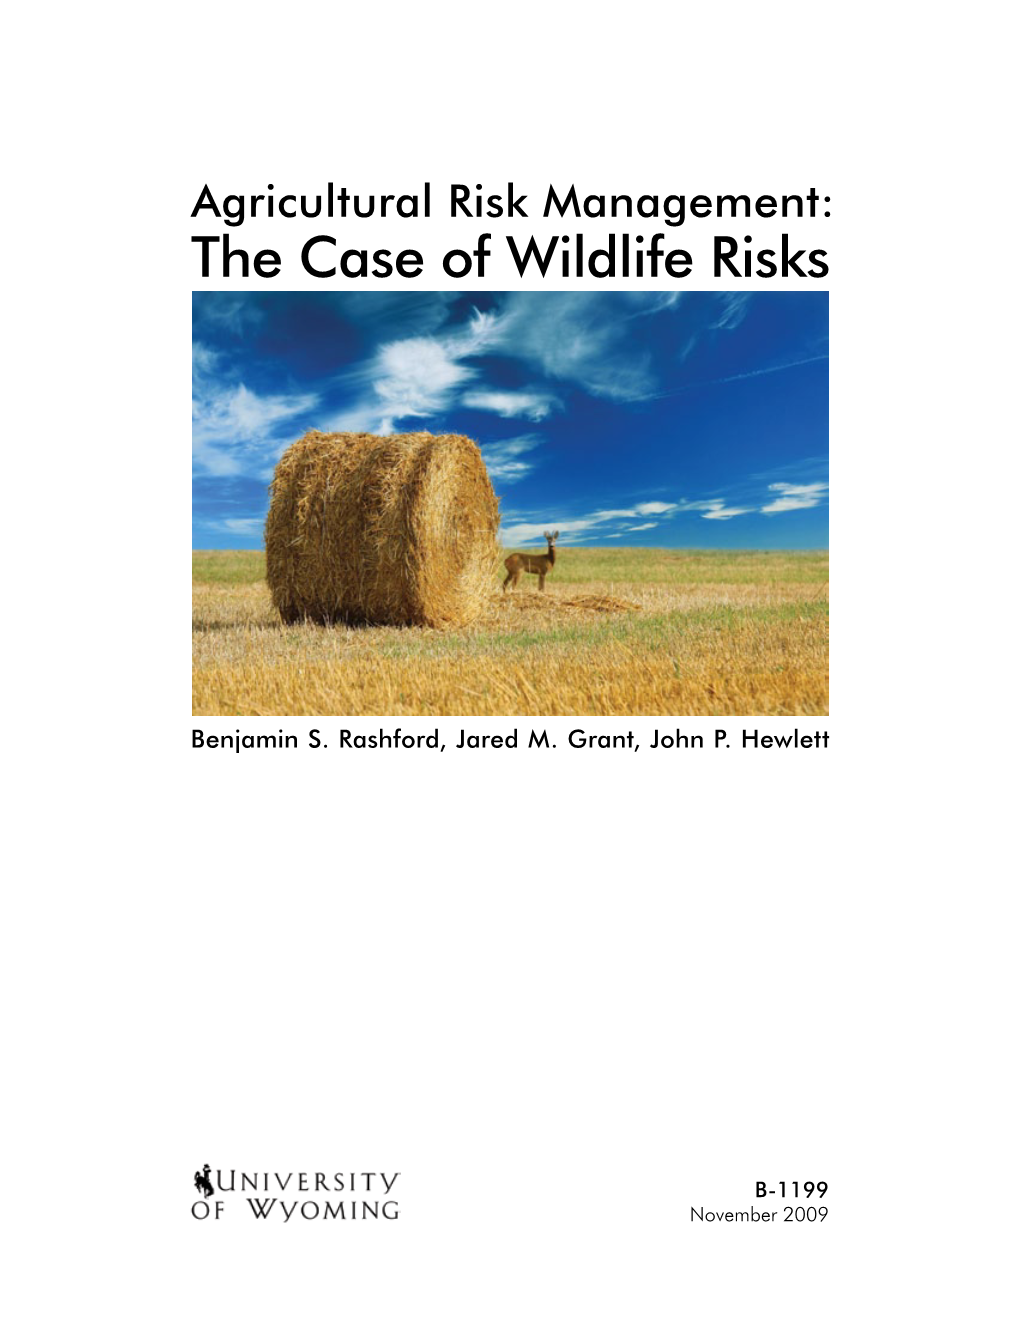 Agricultural Risk Management: the Case of Wildlife Risks